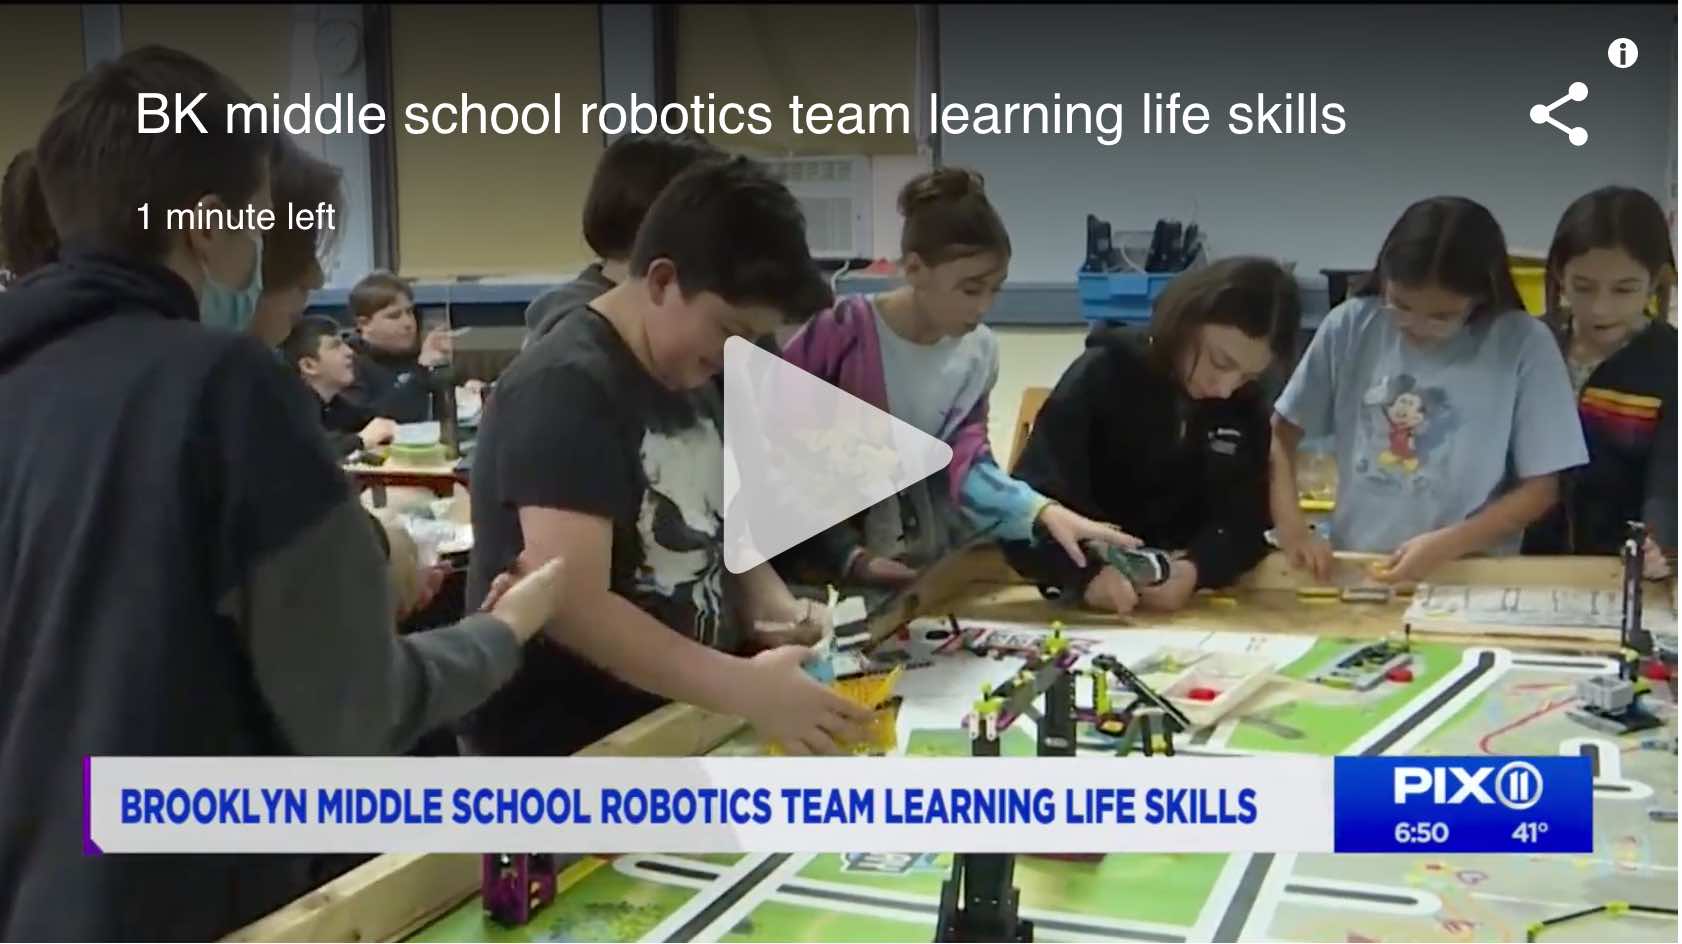 https://pix11.com/news/local-news/brooklyn/brooklyn-middle-school-robotics-team-learning-life-skills/amp/?fbclid=IwAR31mNUeQ37ZqhX8hI6hC2I5IDWFnNL50D1ORX4sdBQy-Unbd_2GEqWF_2s